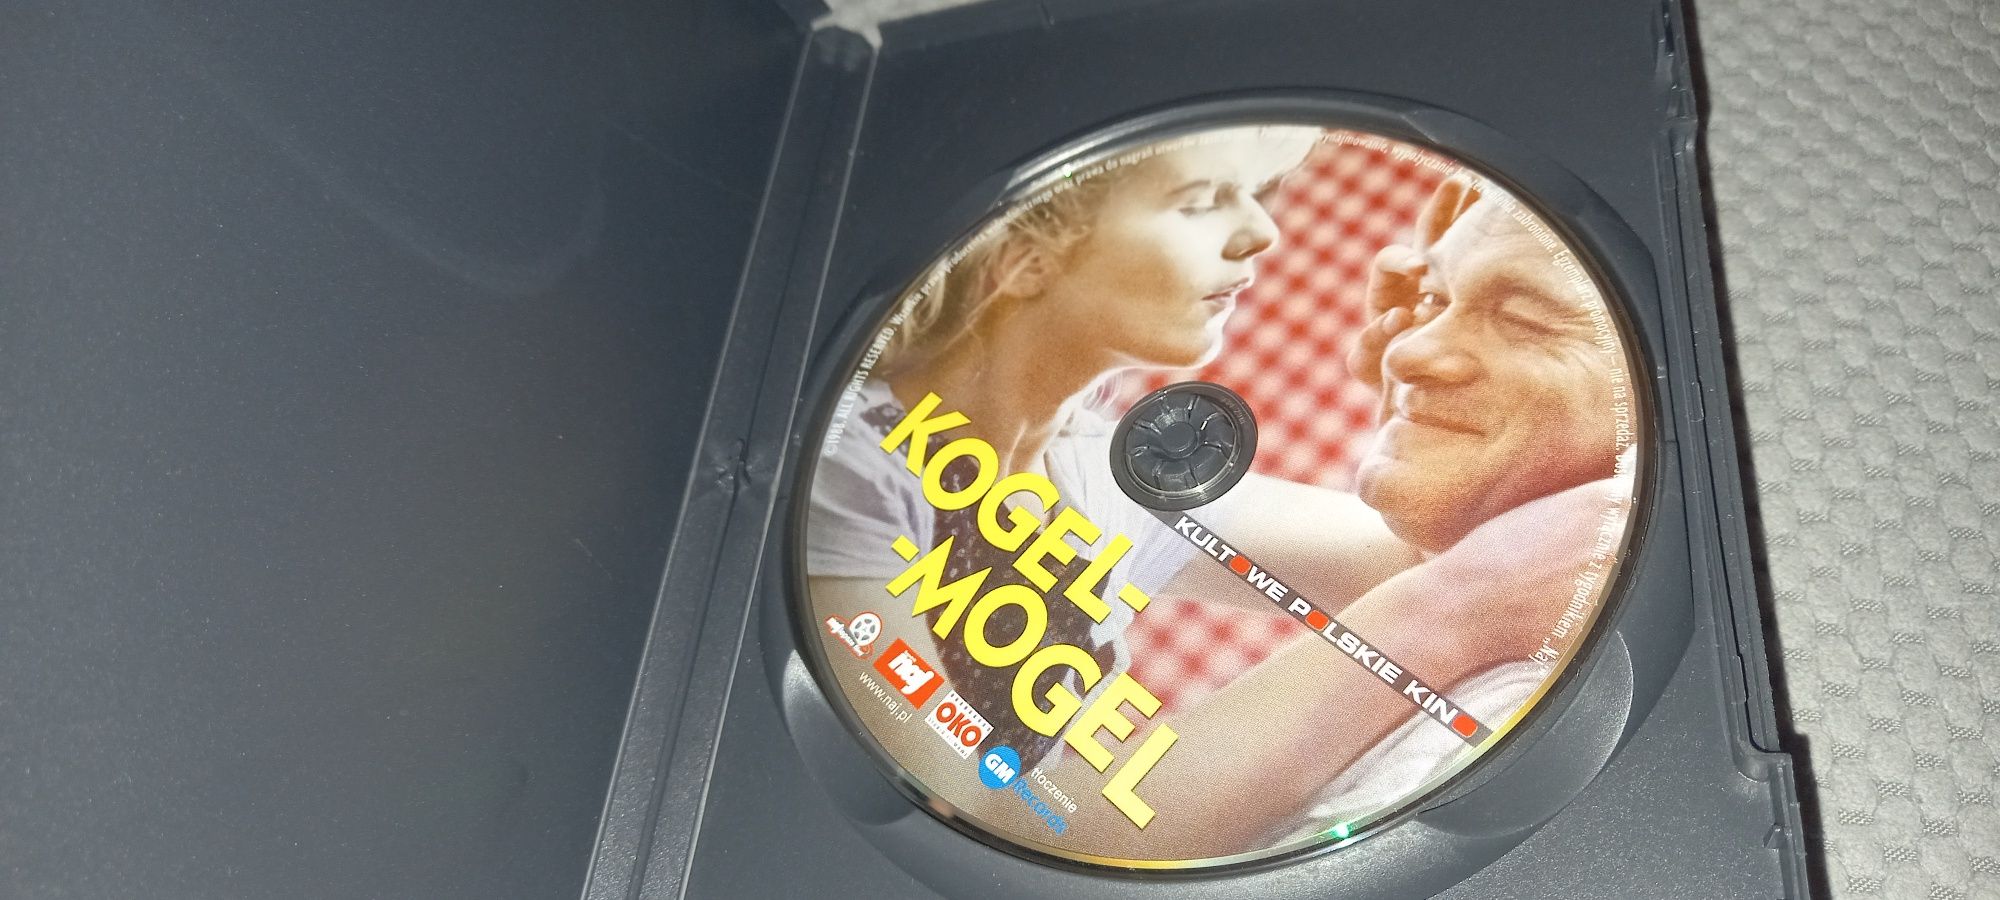 Kogel-mogel dvd Super stan